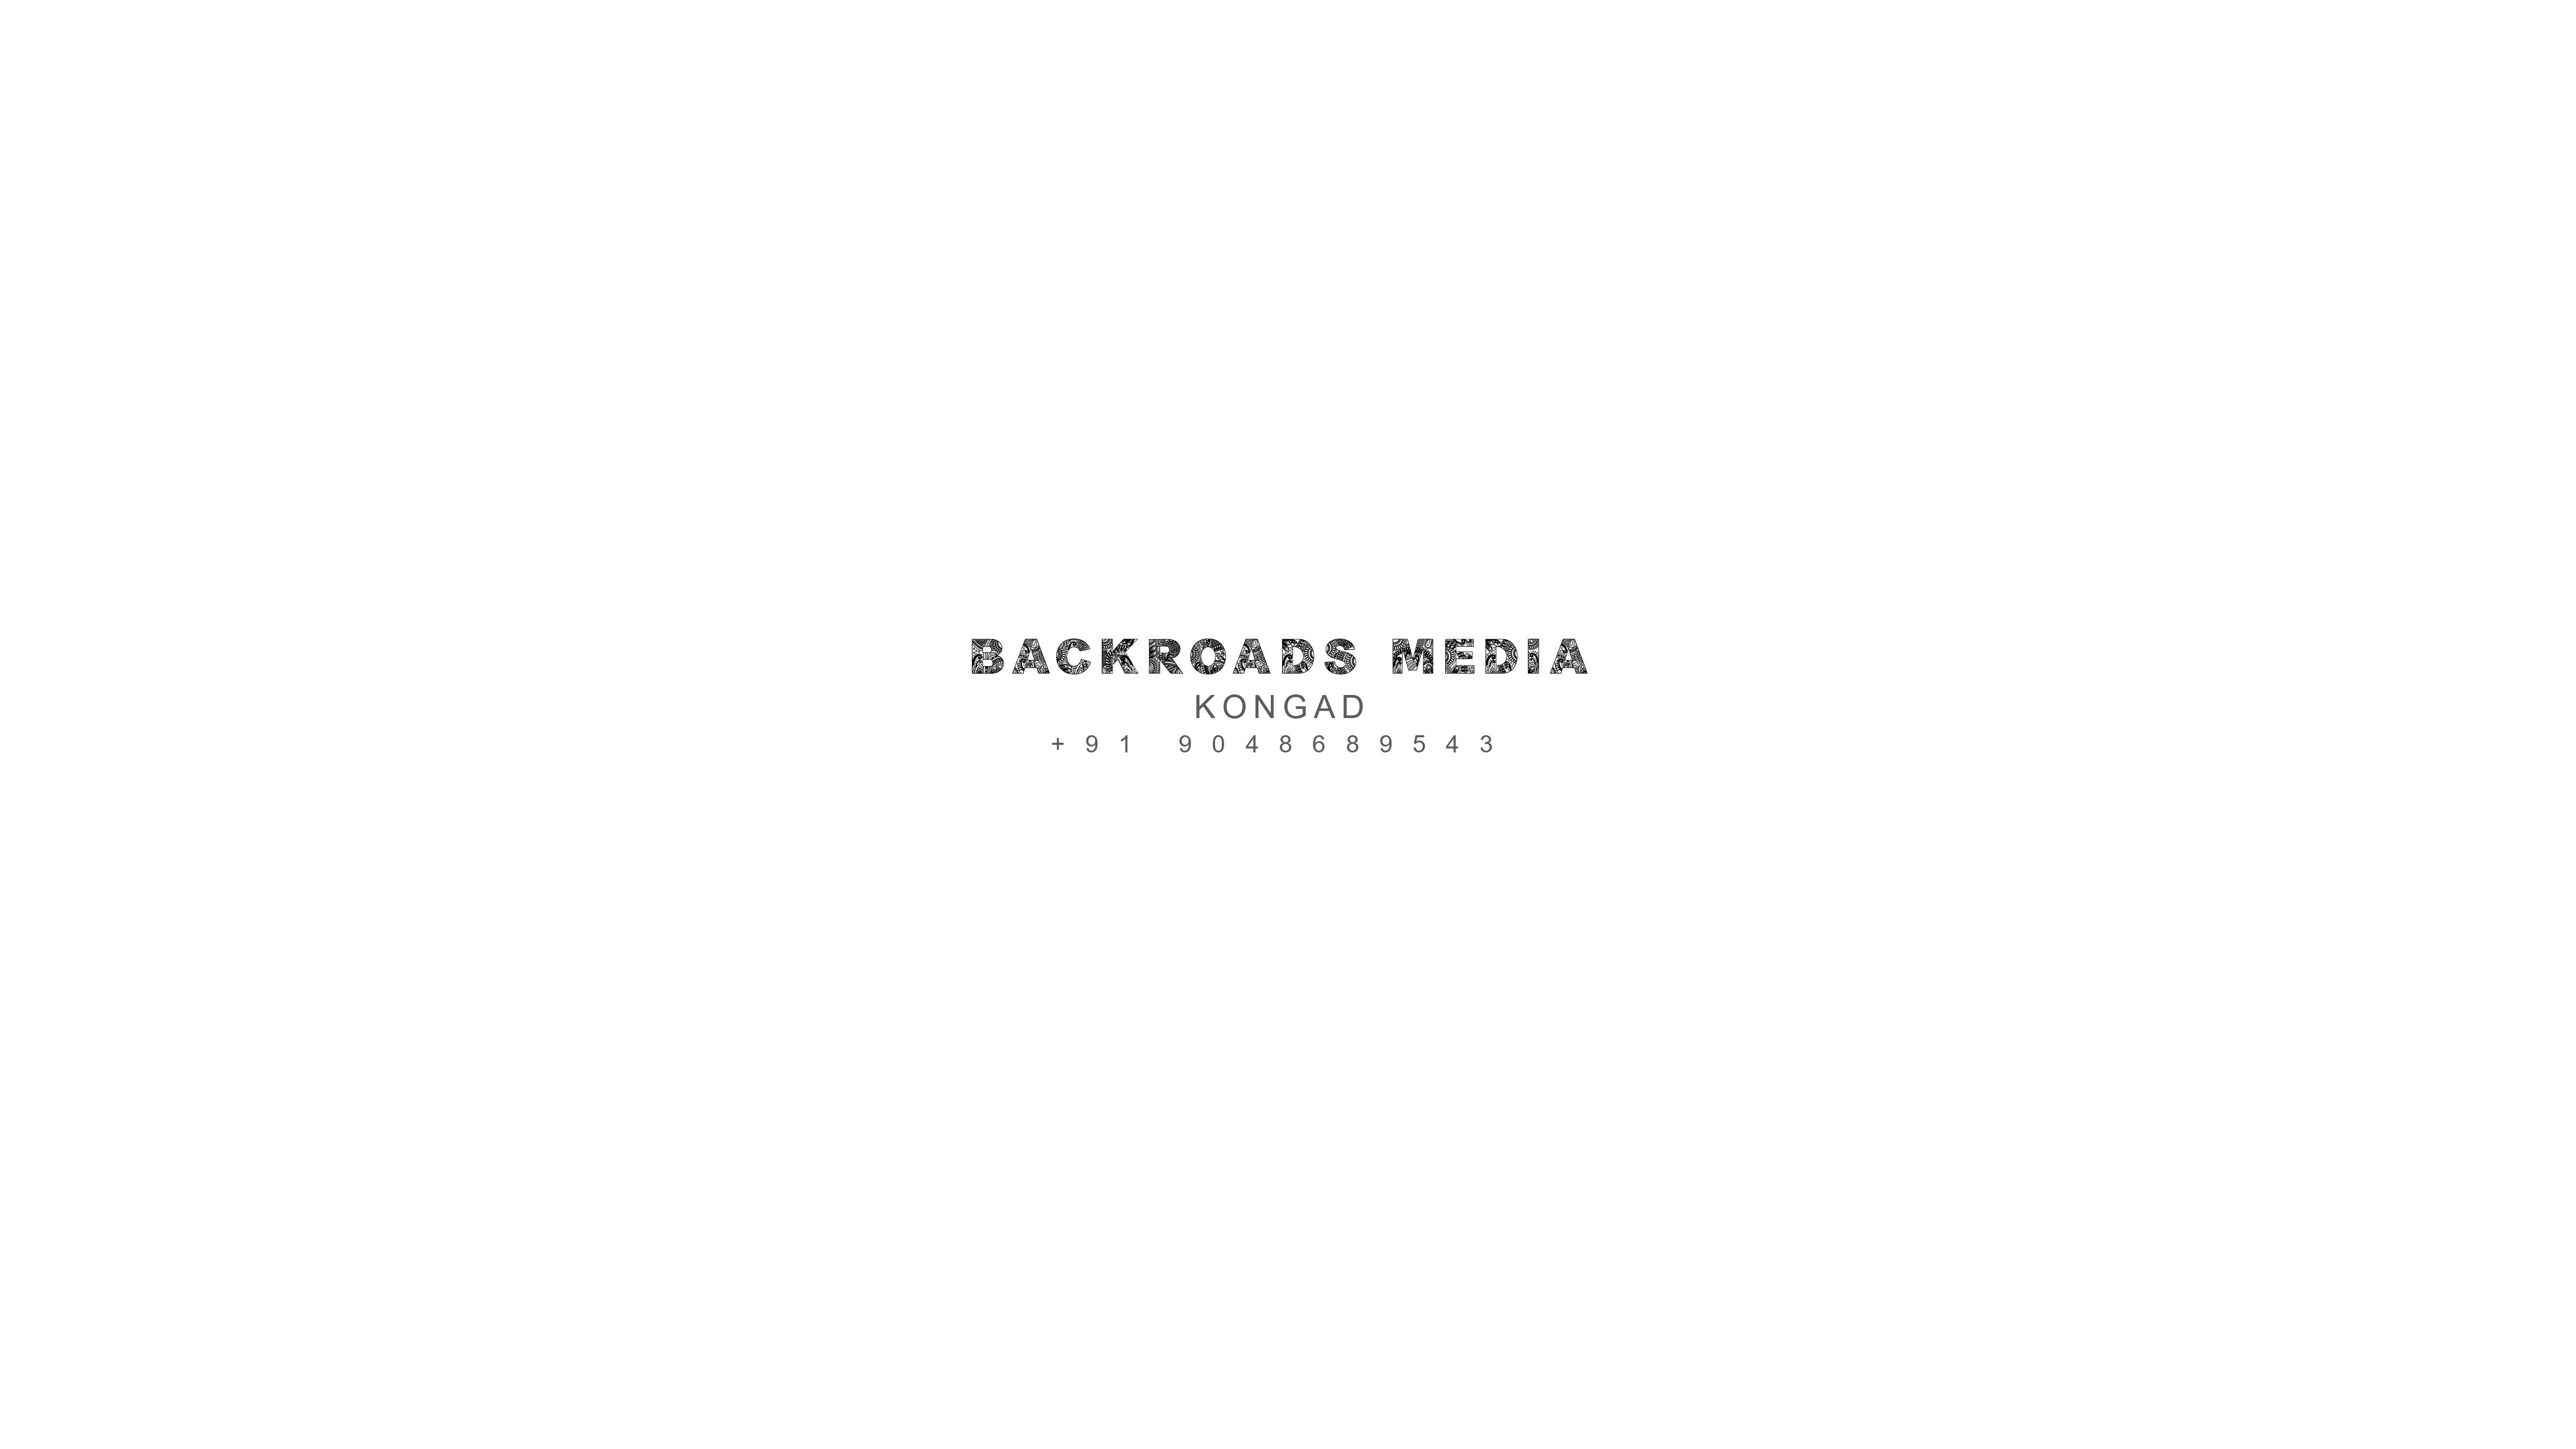 Backroads Media